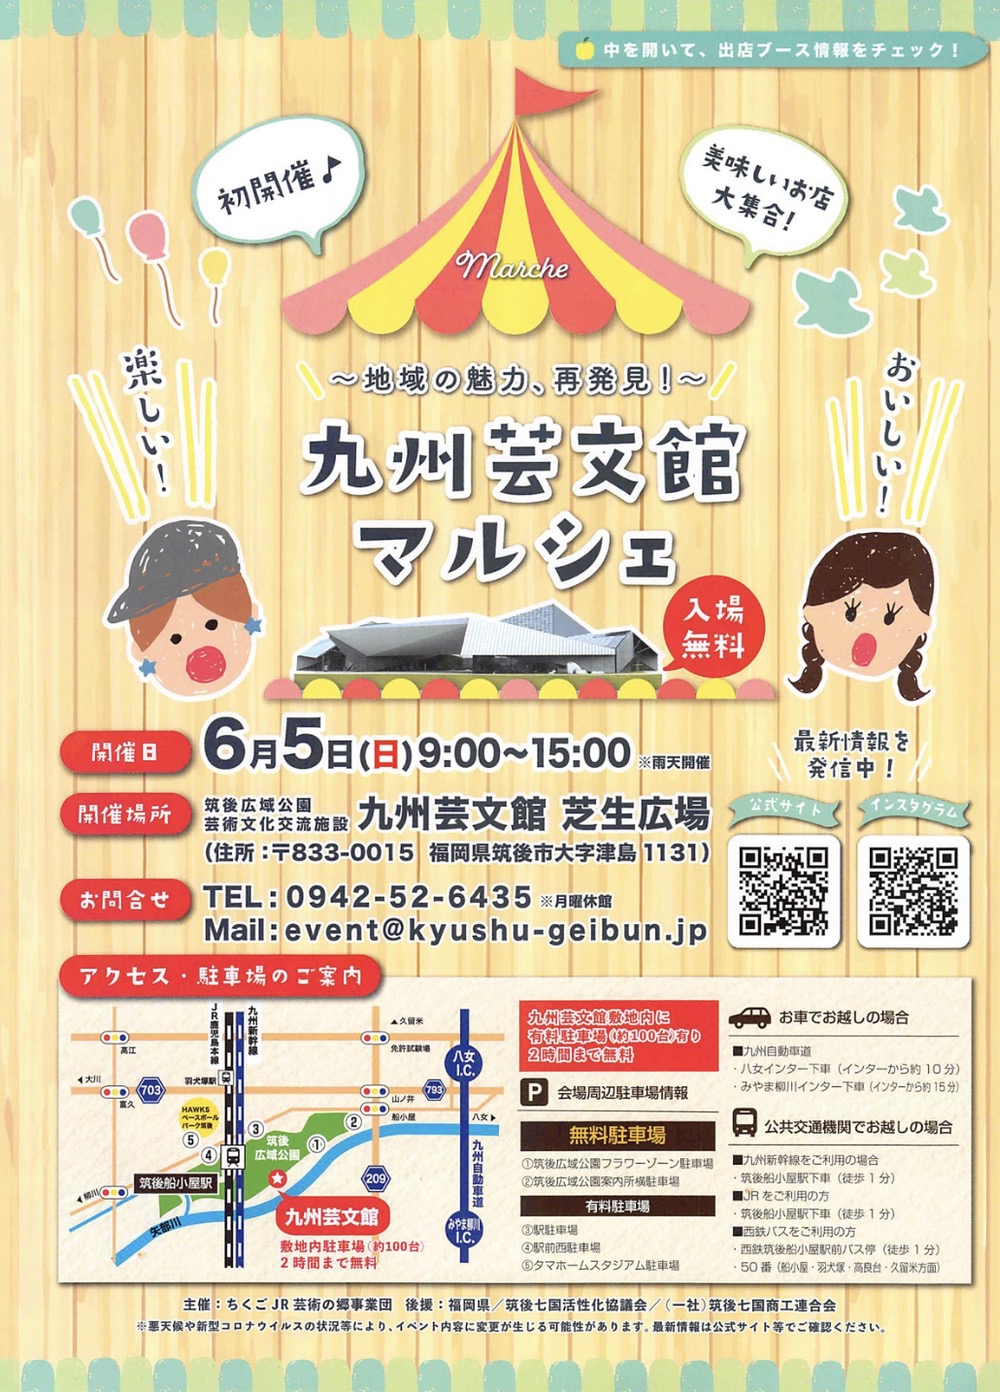 九州芸文館マルシェ 食のイベント初開催！地域の美味しいものが大集合【筑後市】